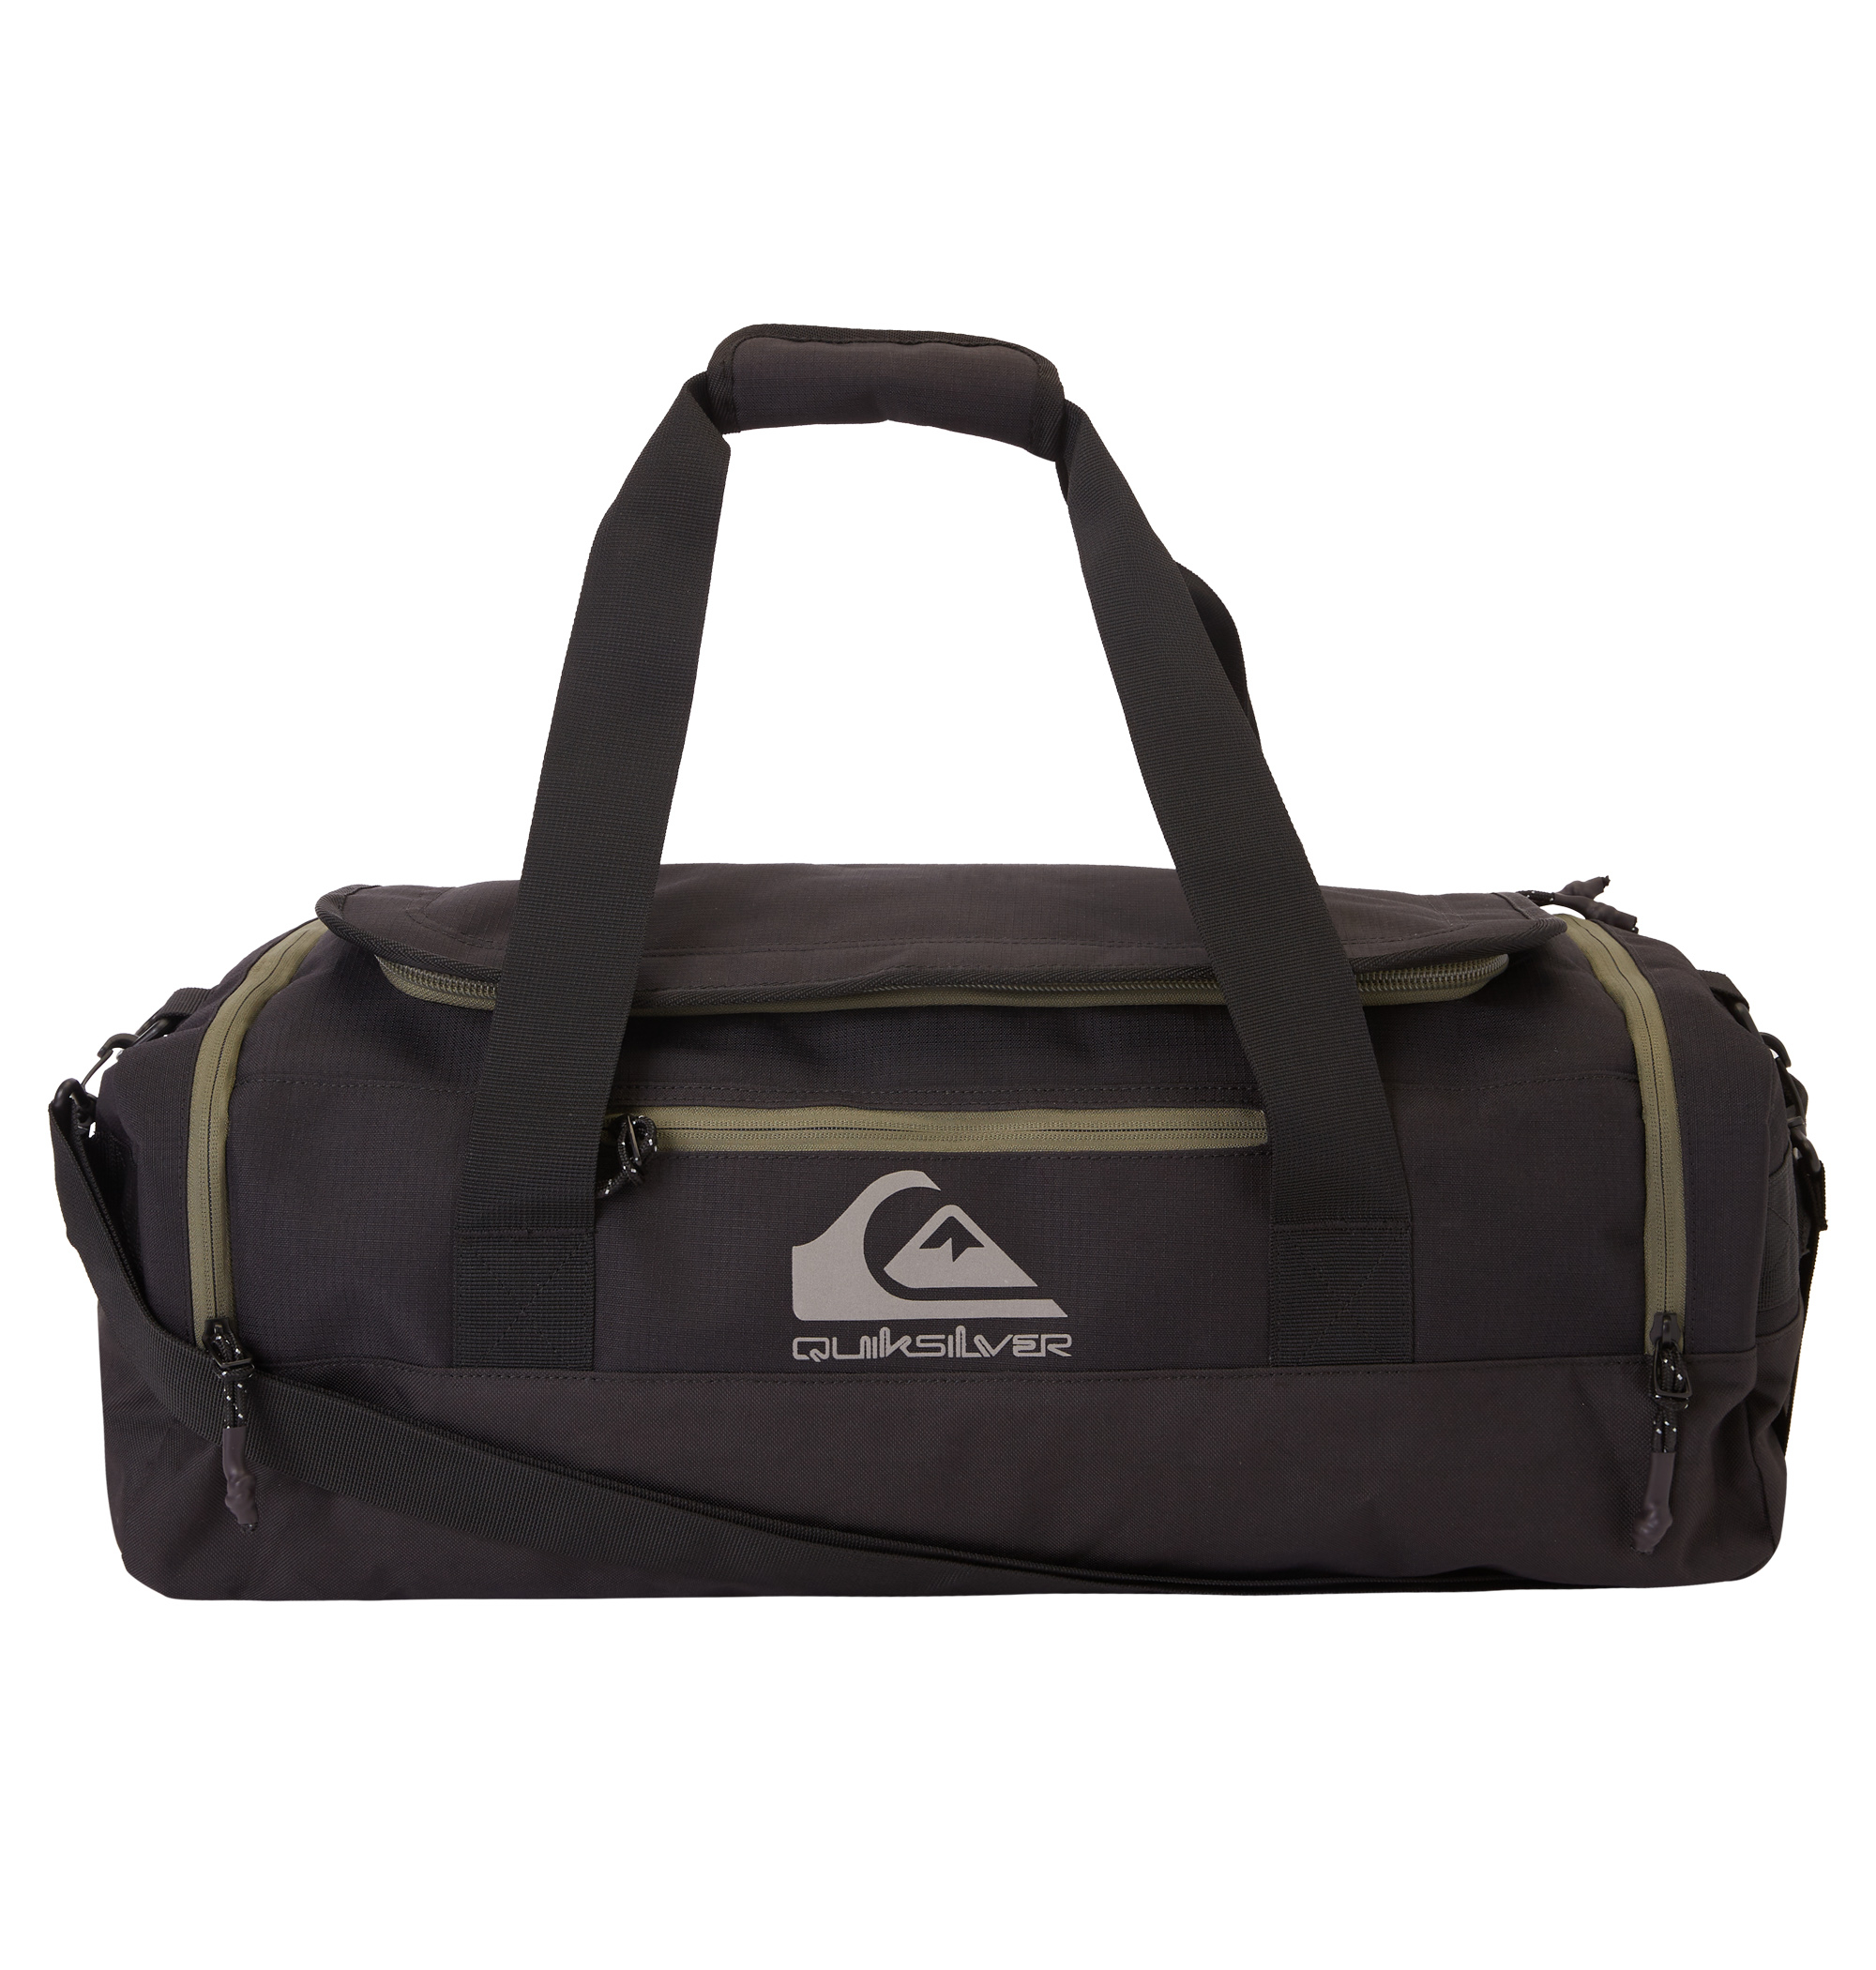 ＜Quiksilver＞ SHELTER DUFFLE シンプルなスタイルながらたっぷり収納できる大容量のダッフルバッグ